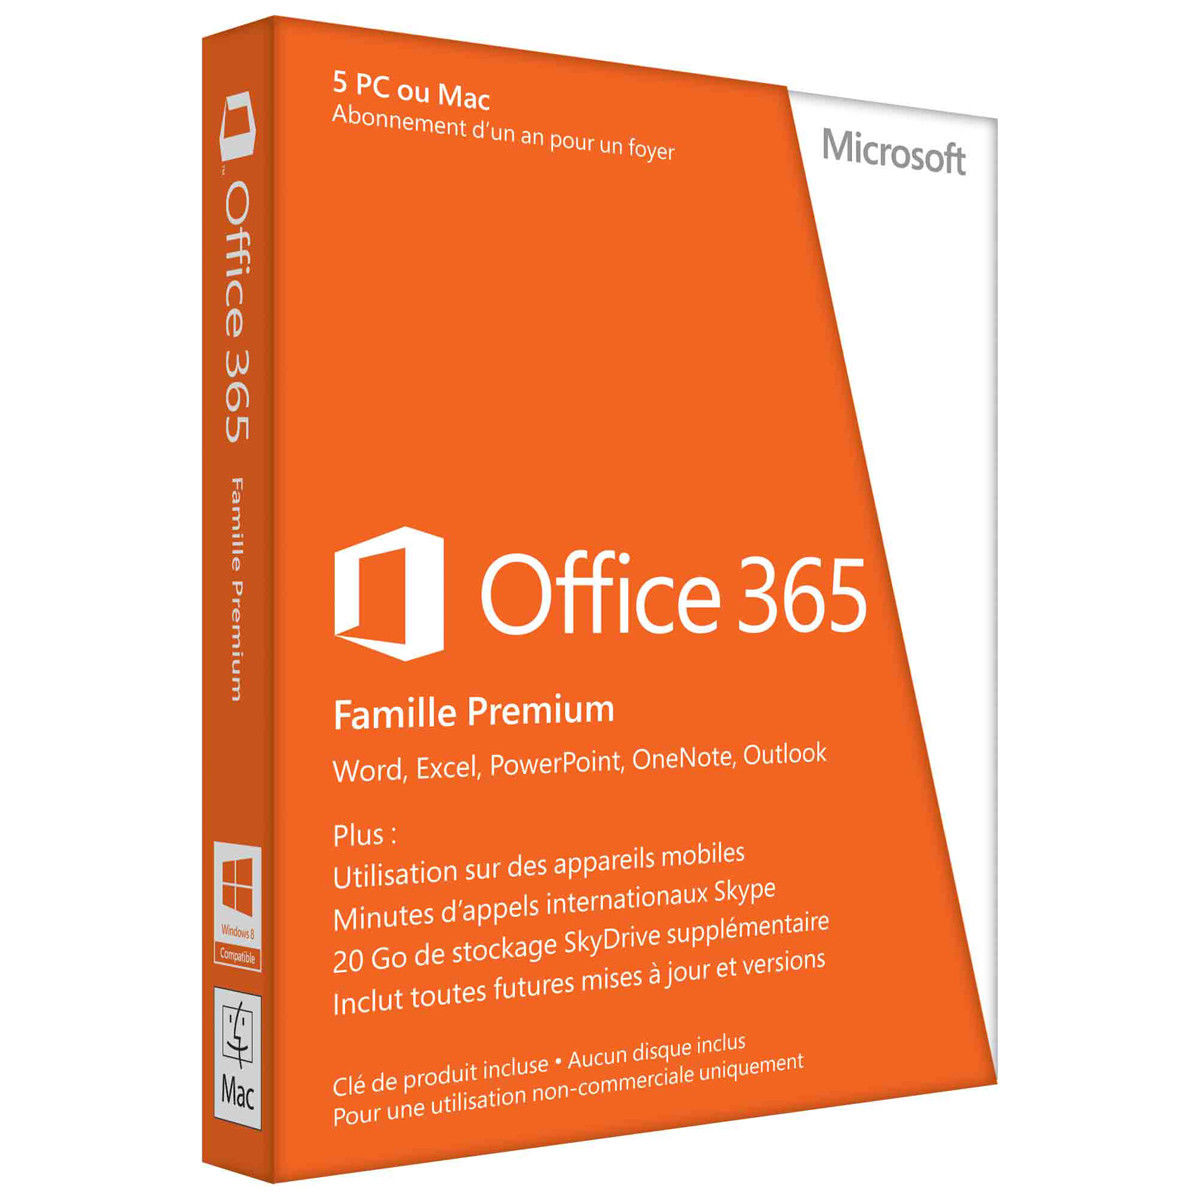 Office 365 Famille - Inclus Les Nouveaux Logiciels Office 2016 Pour 5 Pc/mac + 5 Tablettes + 5 Smartphones Pendant 1 An